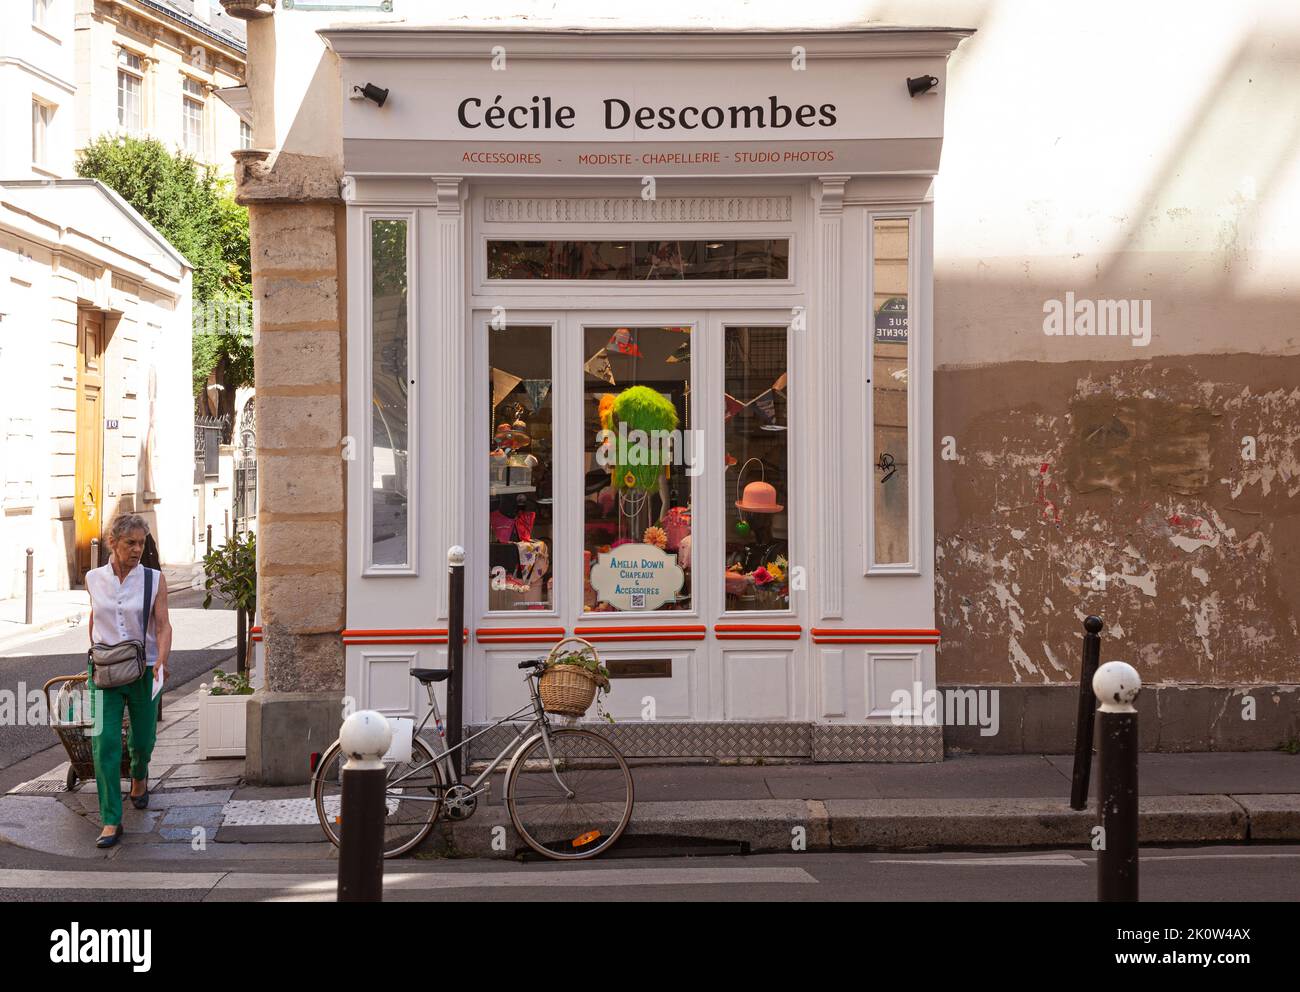 Paris, France - juillet 15 : fenêtre de la boutique d'accessoires Cécile Descombes dans la rue française typique avec des boutiques au premier étage de l'hôtel. Vintage Banque D'Images